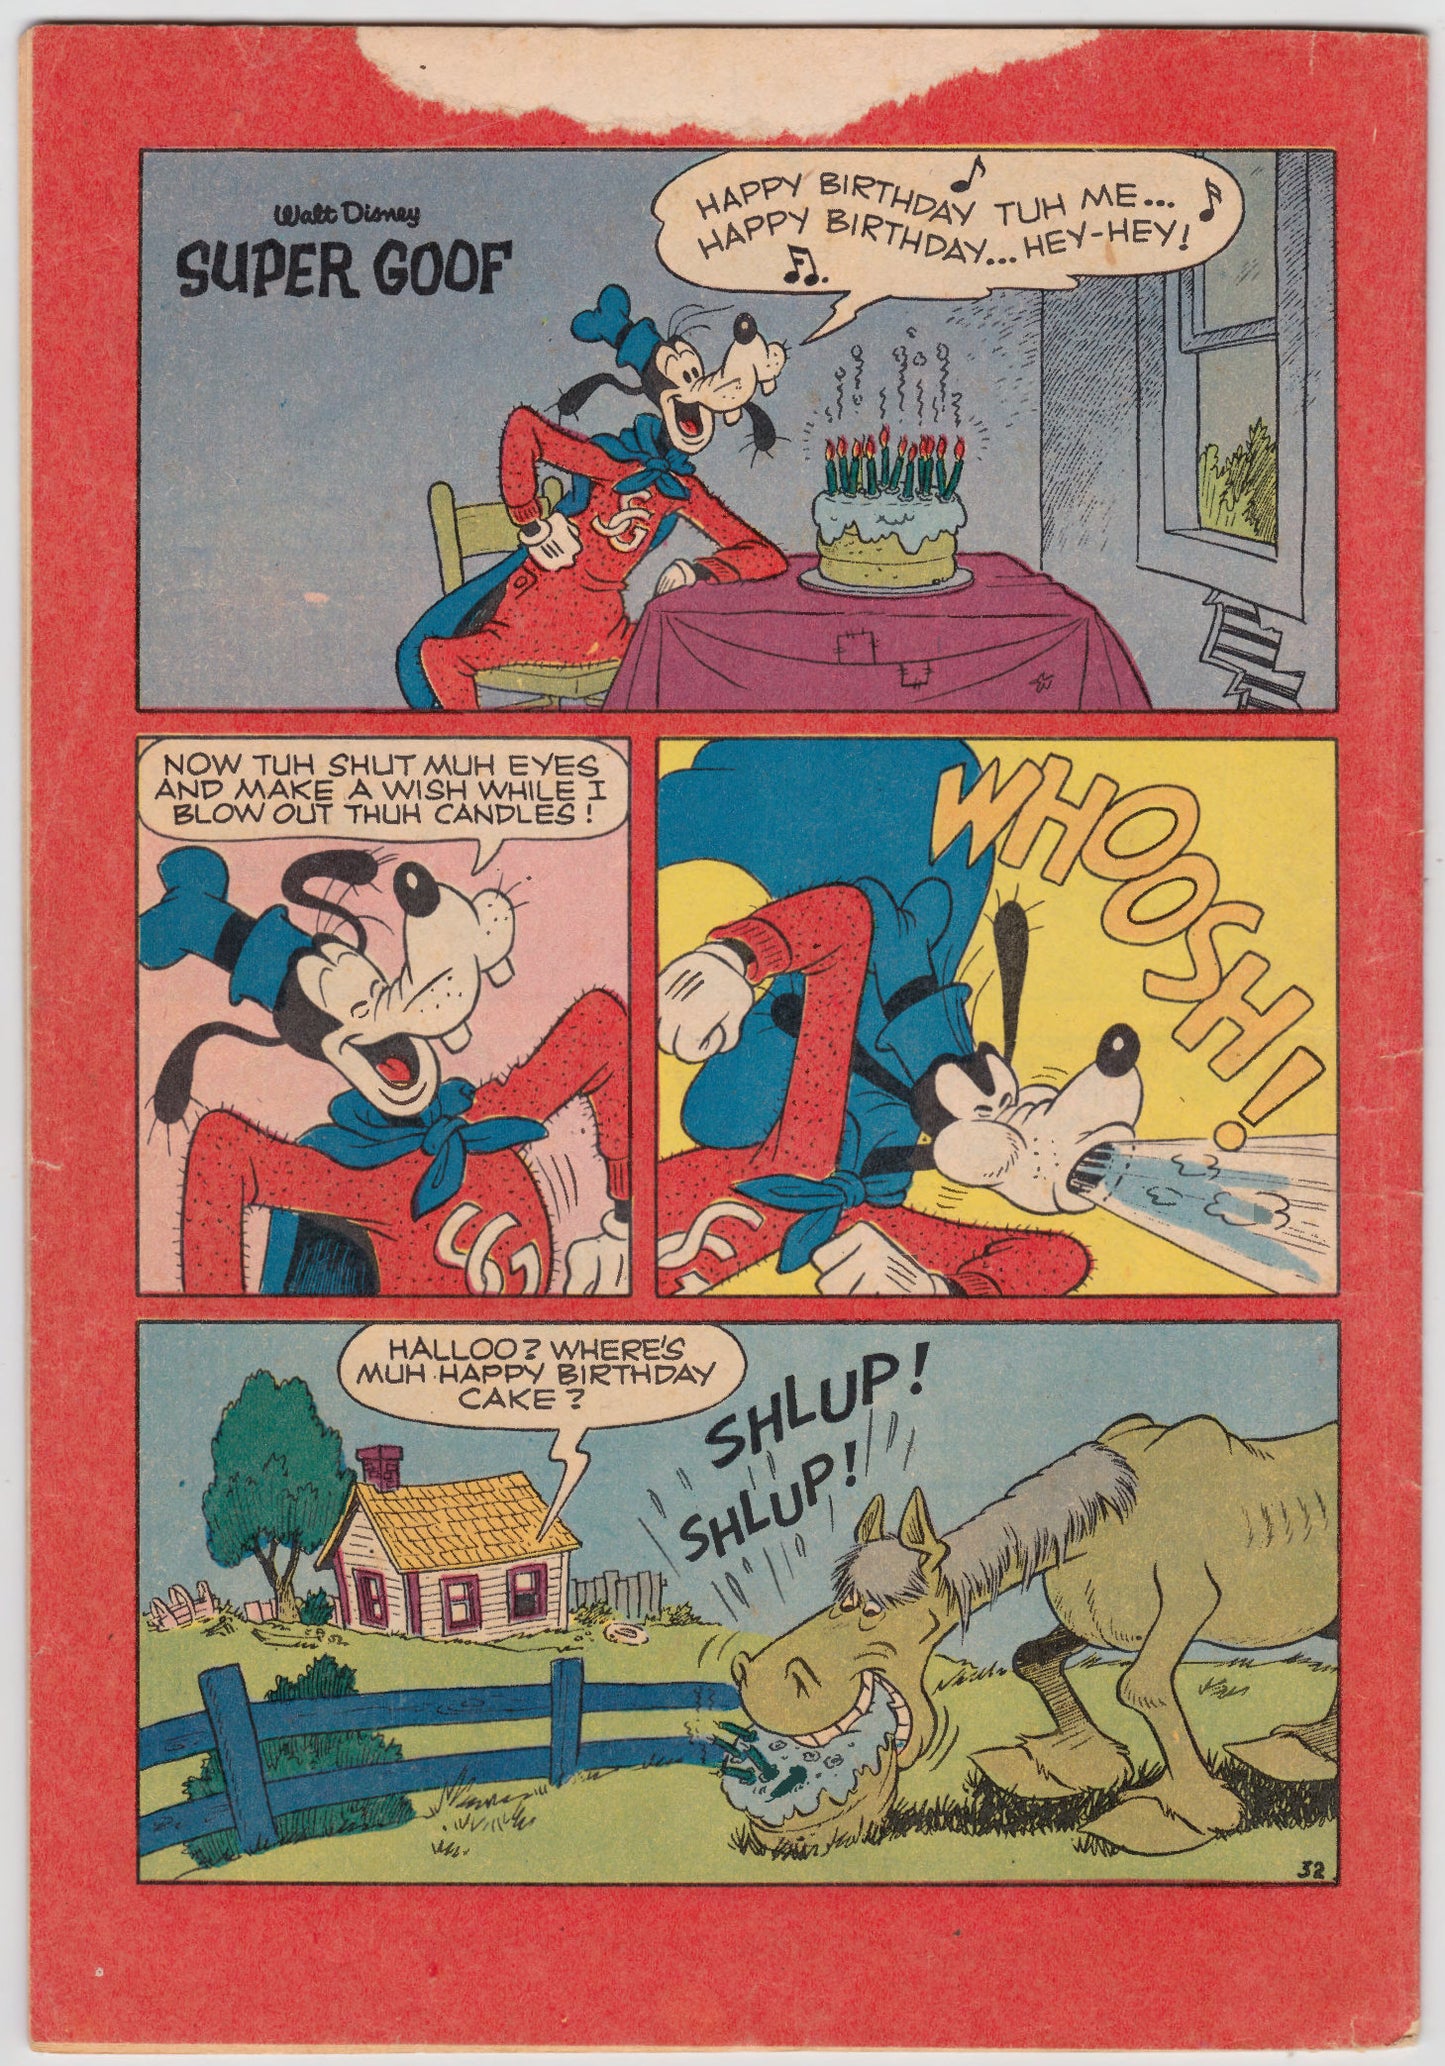 Uncle Scrooge Comic Book By Walt Disney 1967